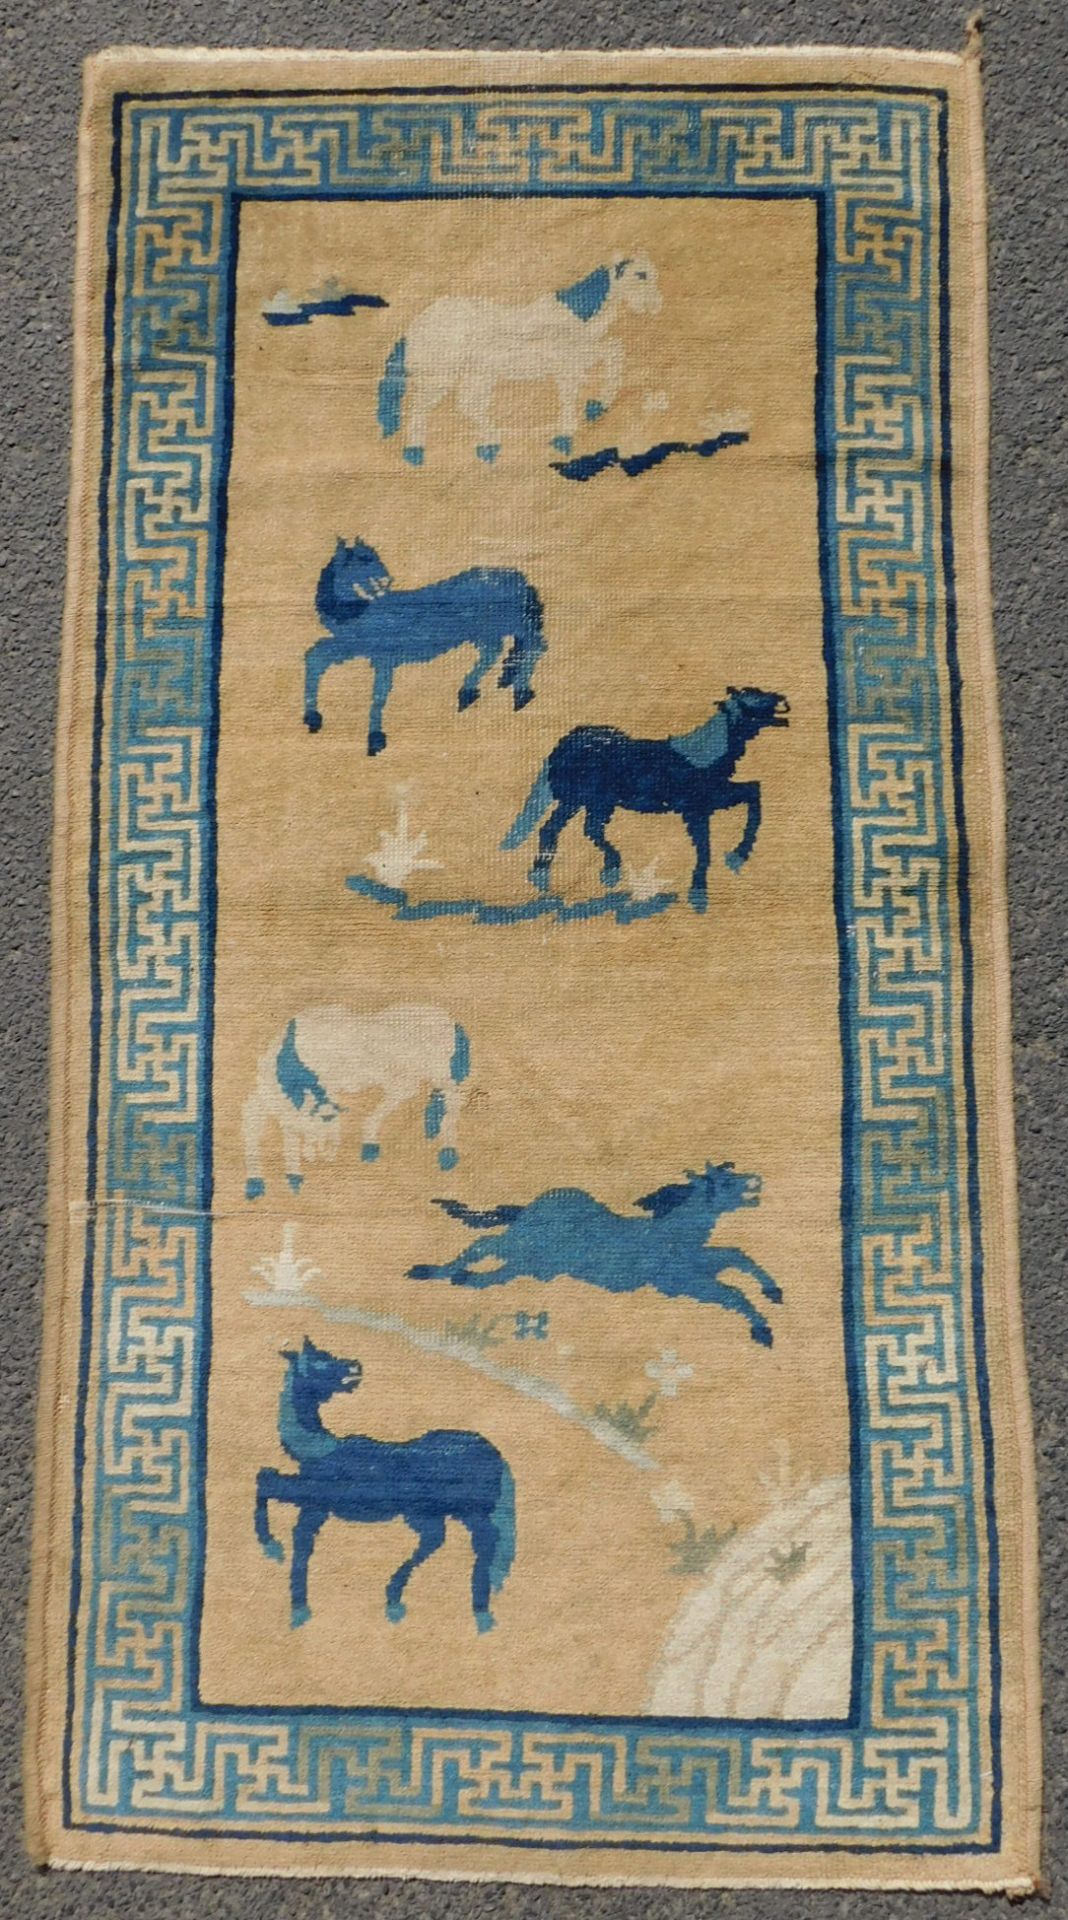 Baotou, Paotou. Teppich mit 6 Pferden. China / Mongolei antik.